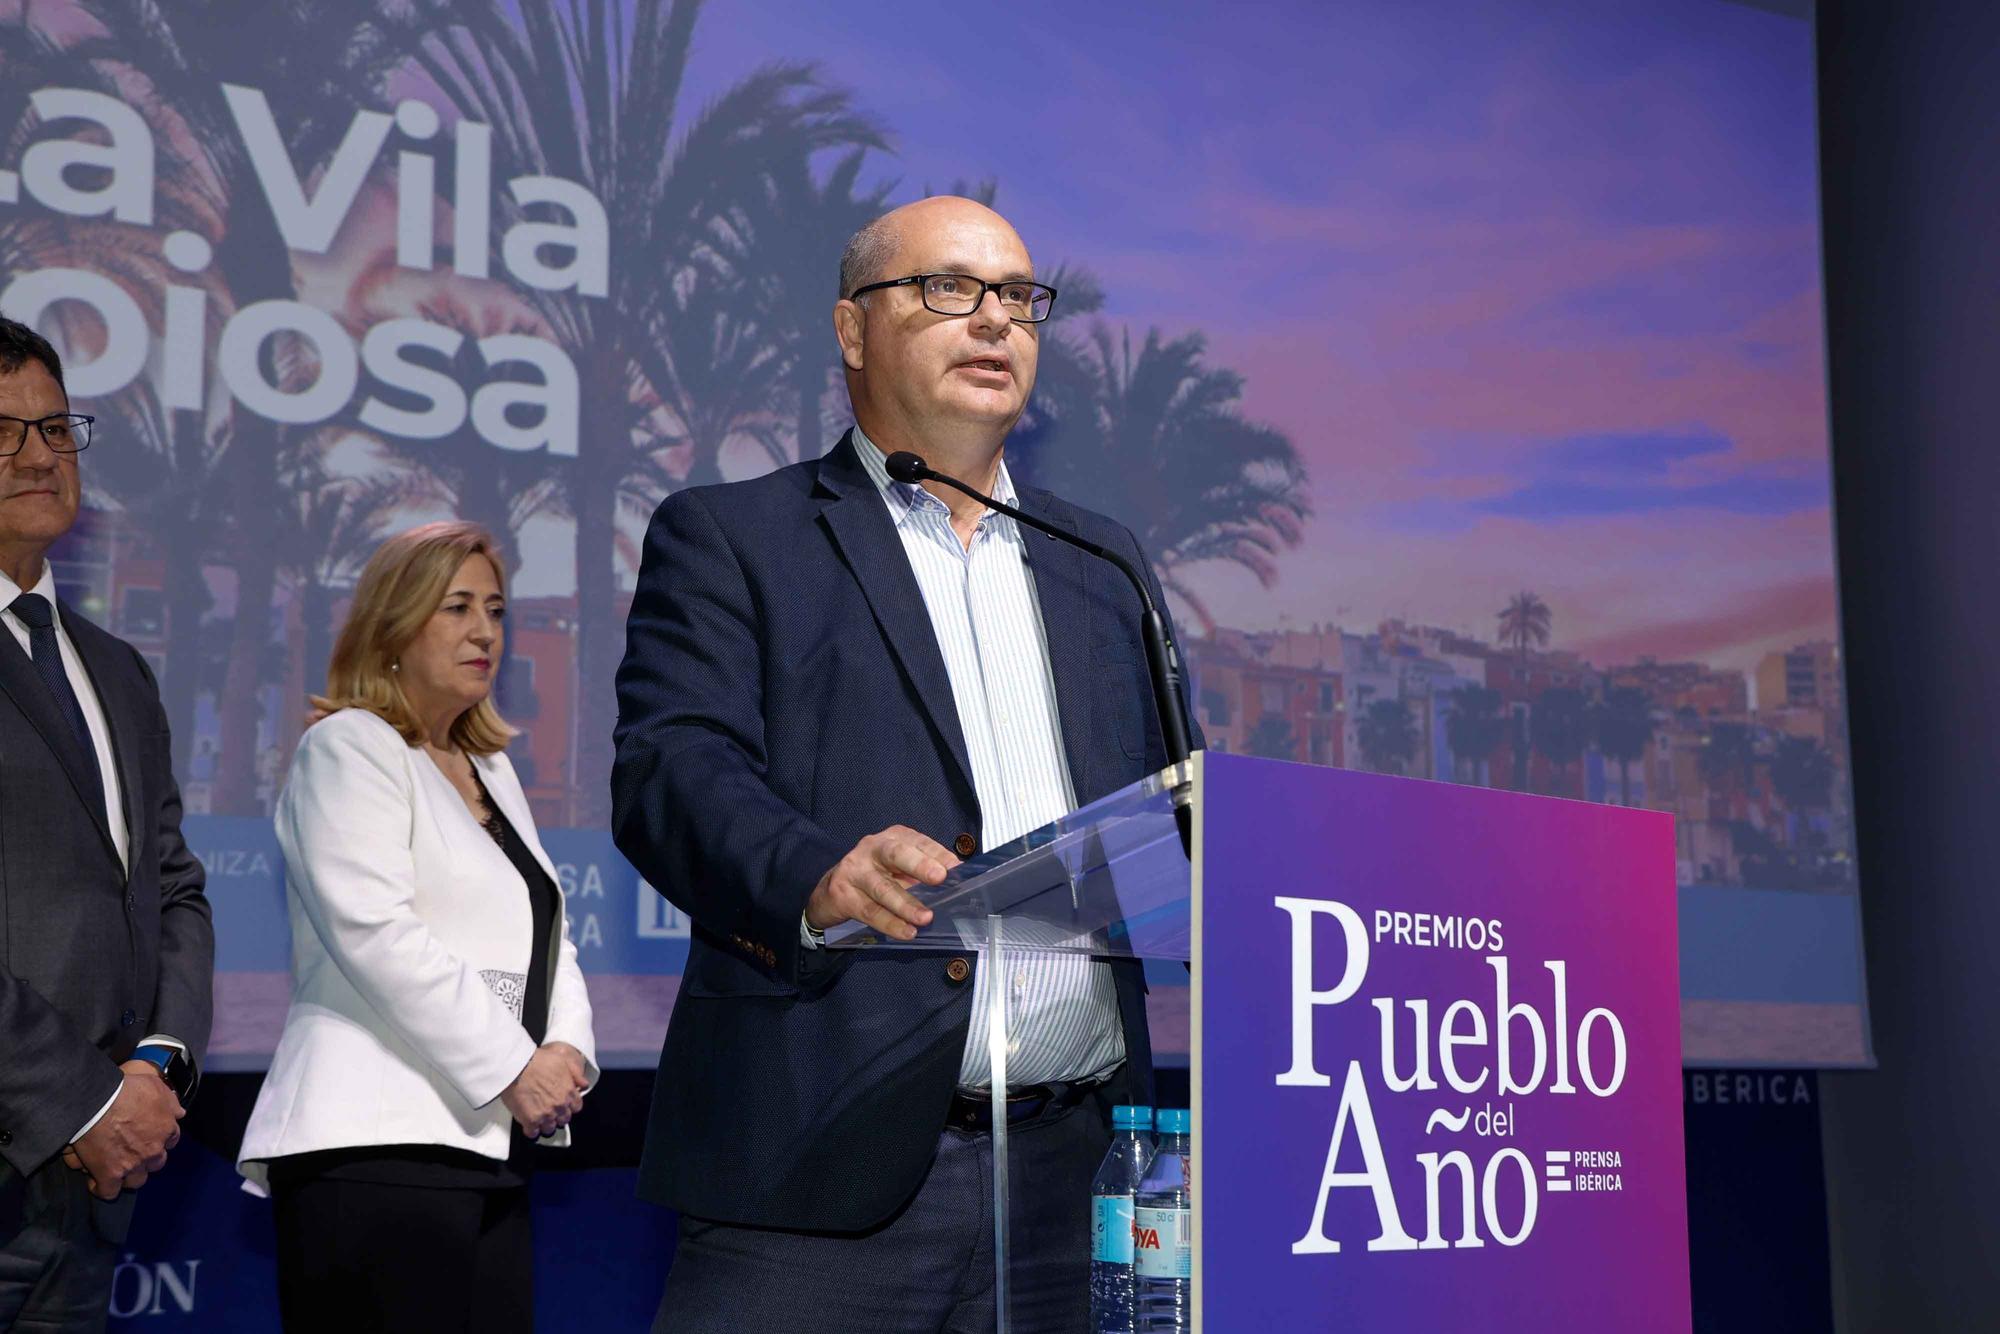 La Vila Joiosa, Cox, Villena y Relleu se han convertido en los pueblos del año de la provincia de Alicante